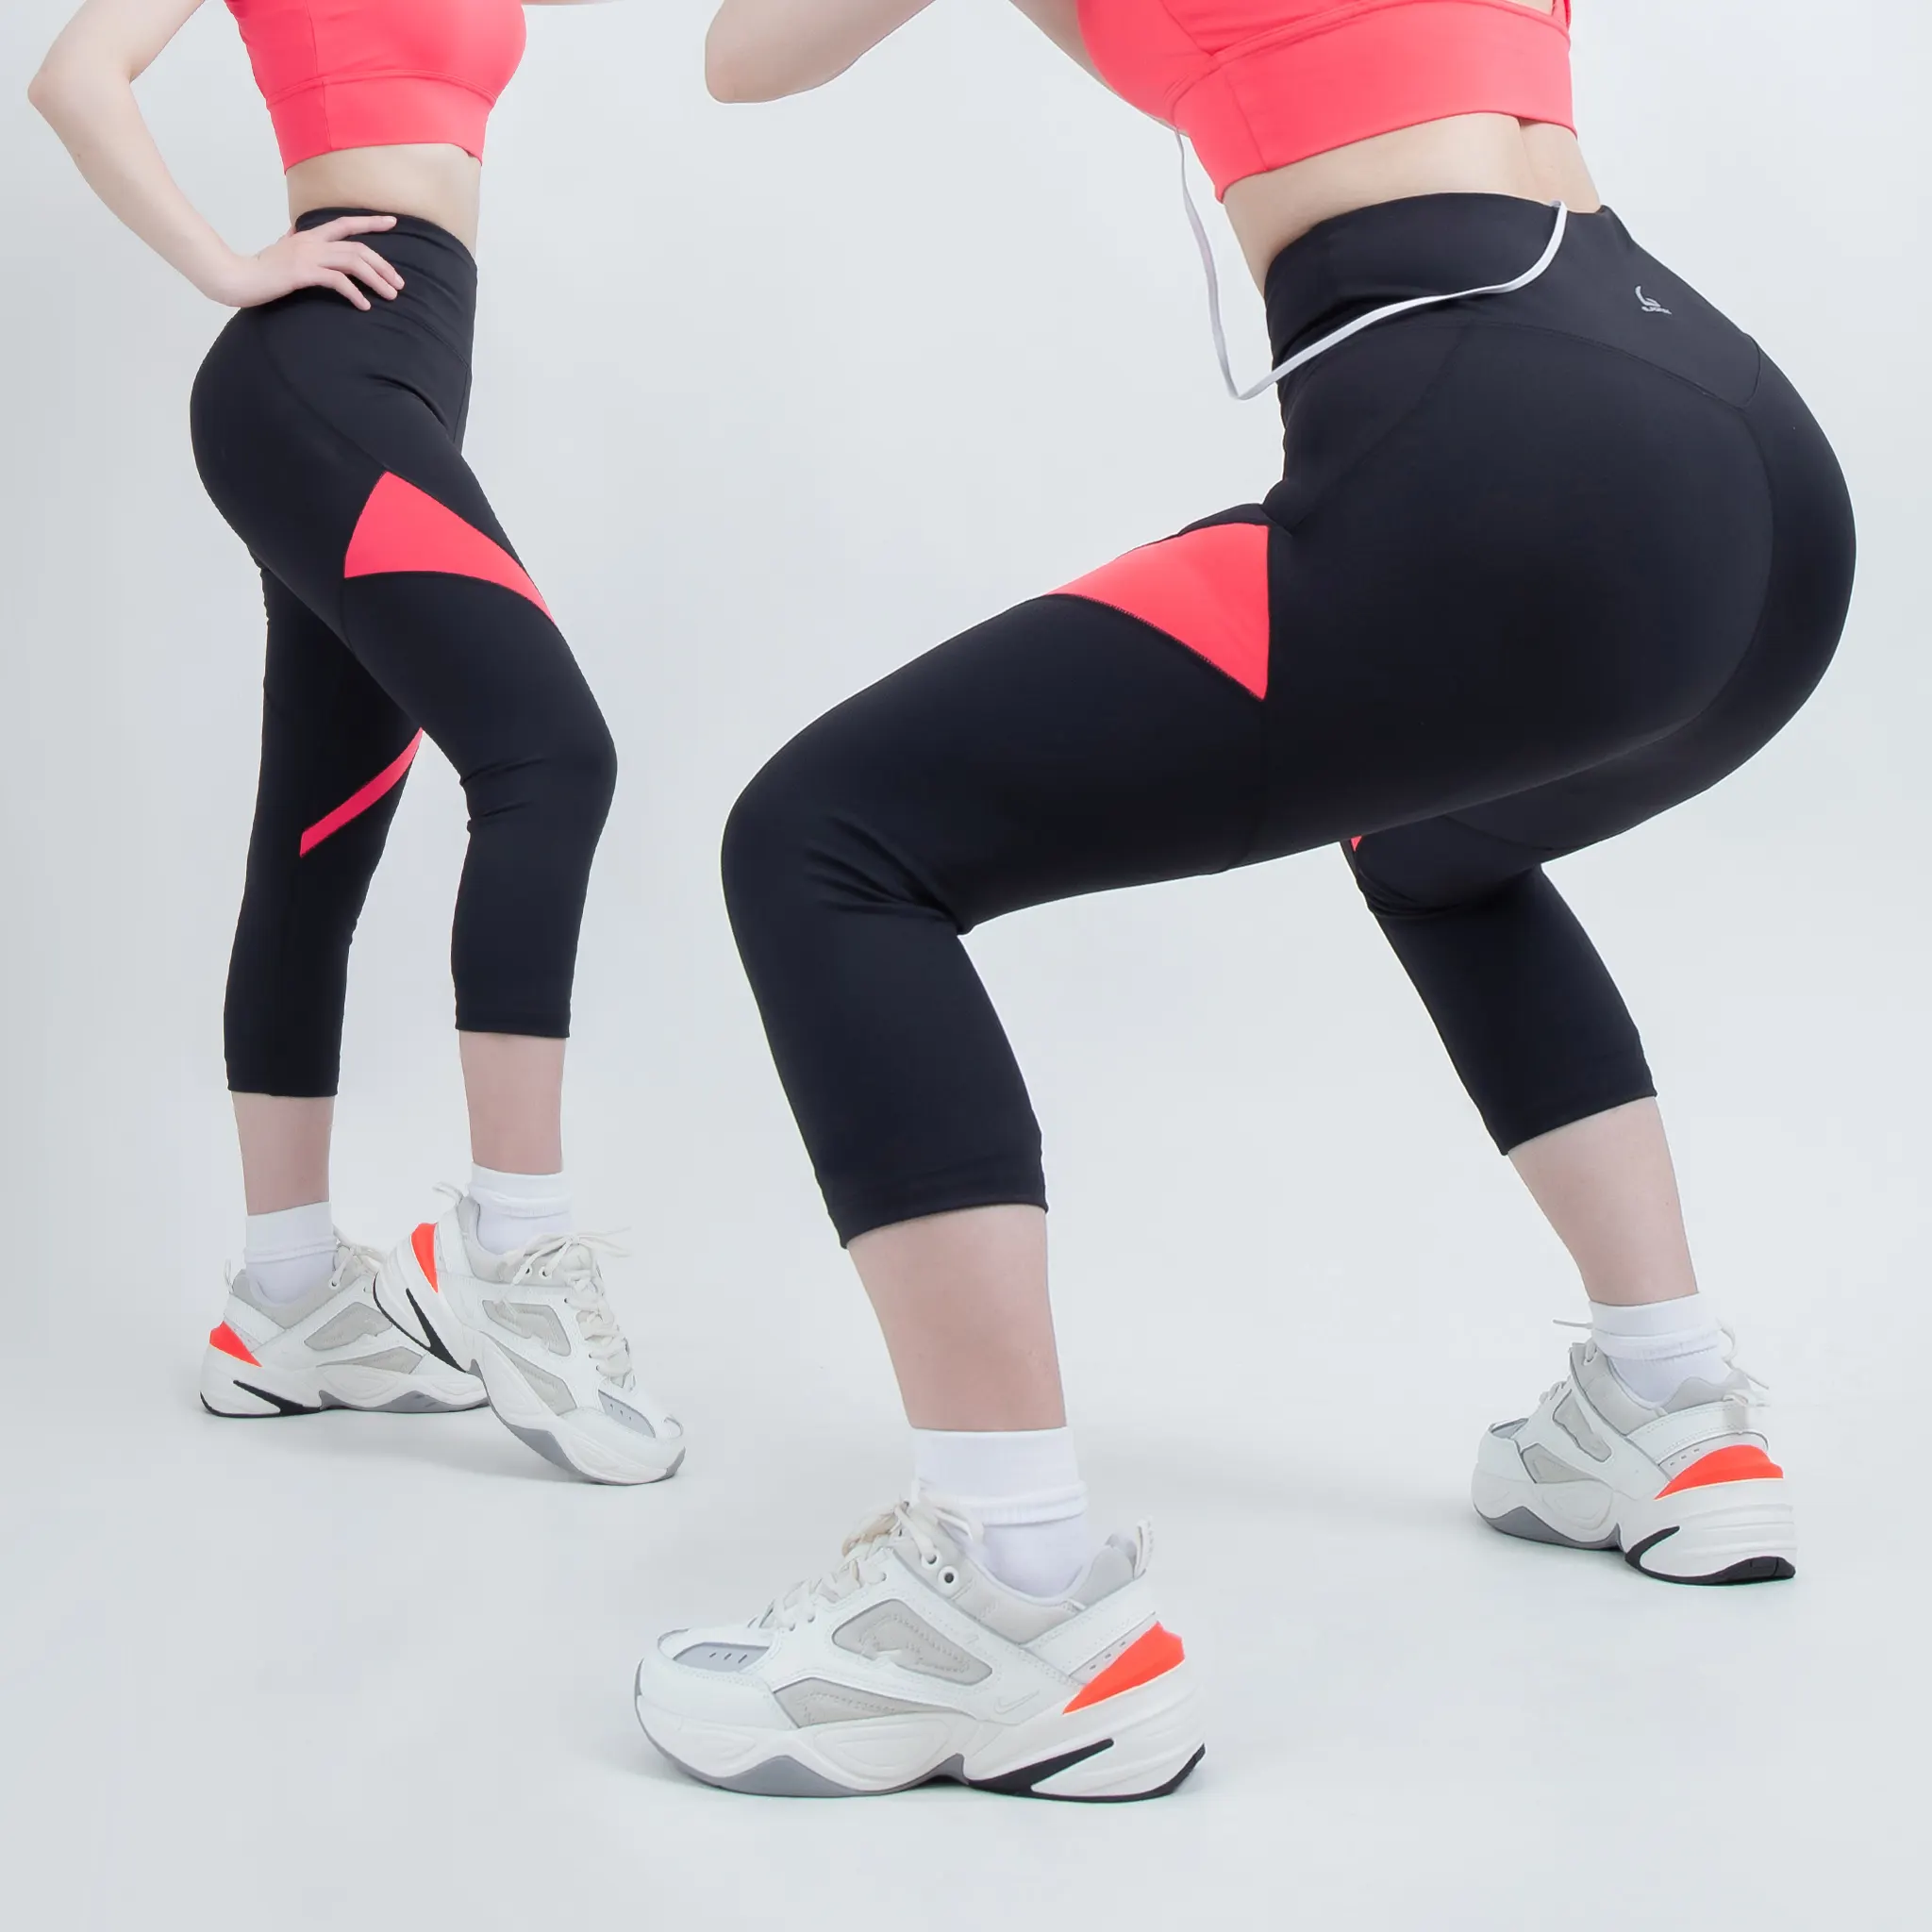  Quần lửng thể thao phối màu Gladimax G08 chất thun co giãn chiều, cạp cao tôn dáng phù hợp cho chạy bộ, yoga, tập gym 